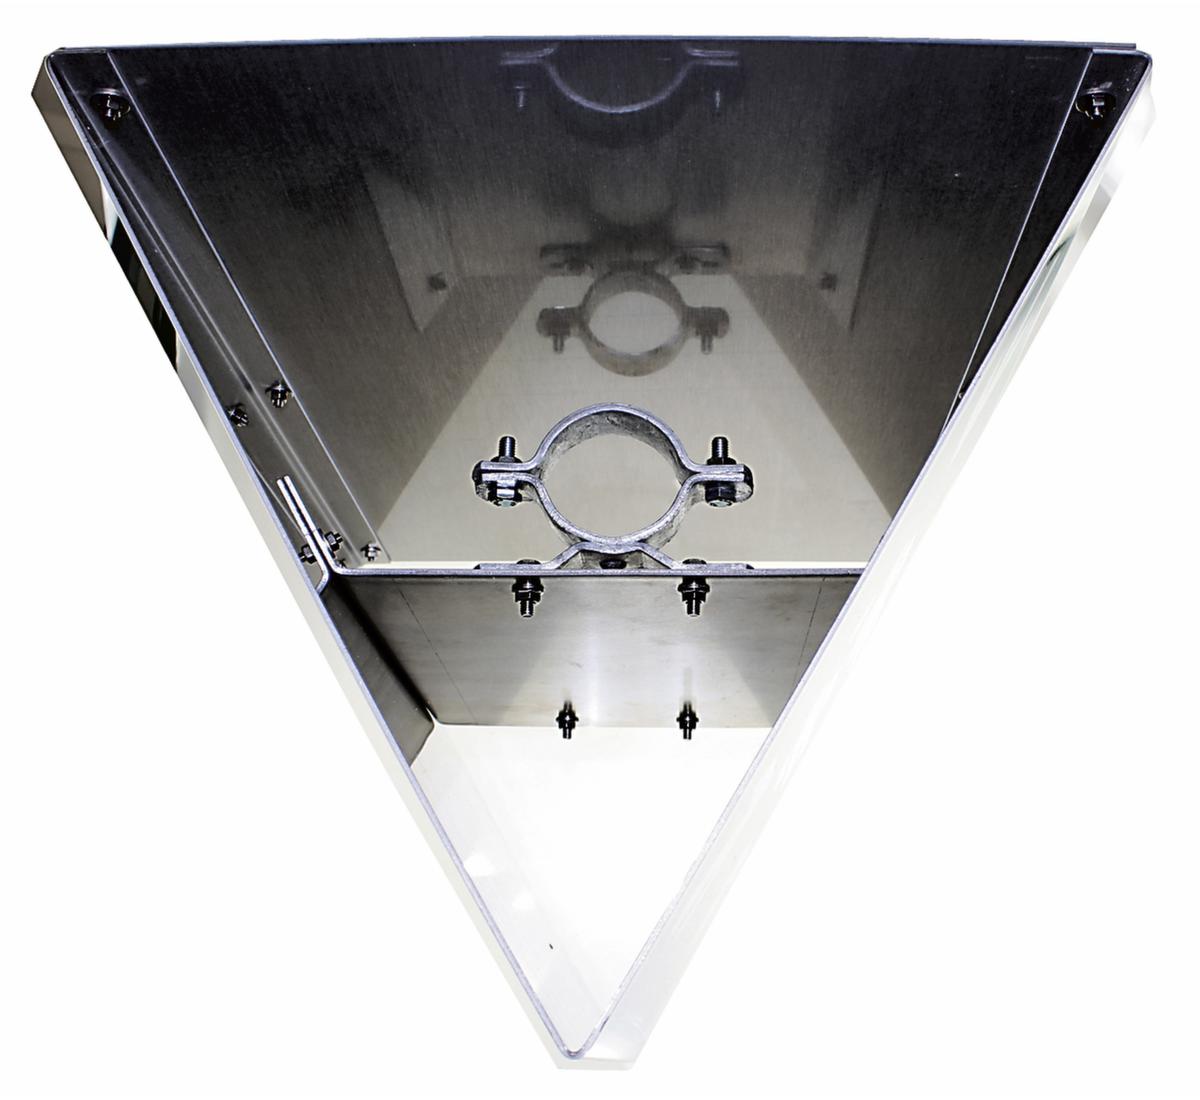 Dreiecksschild für Sammelstelle Detail 1 ZOOM